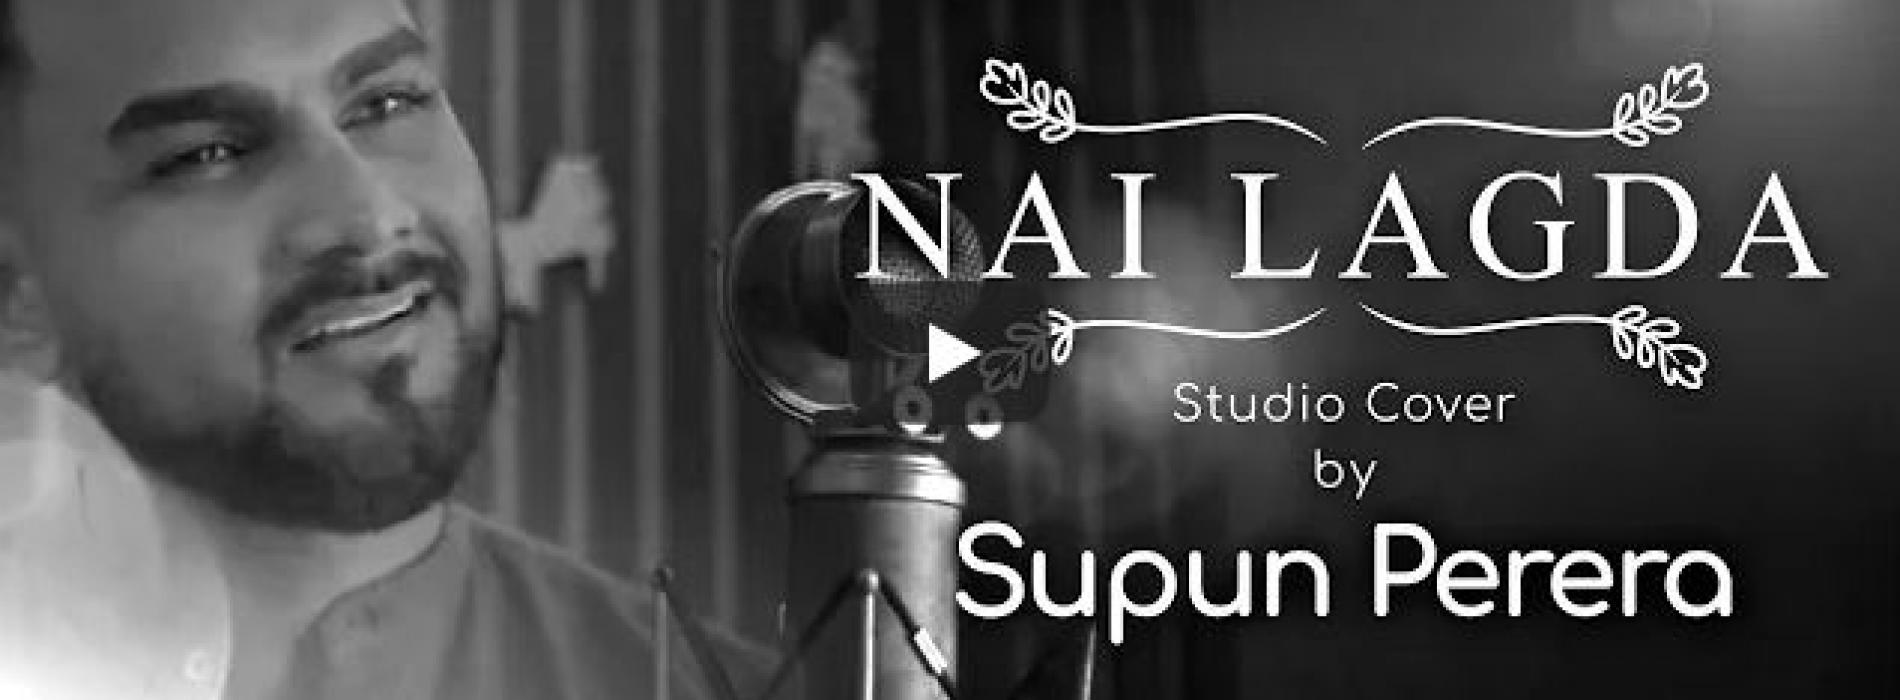 New Music : Nai Lagda – Studio Cover by Supun Perera | Bollywood Studio Sessions | Notebook | Vishal Mishra